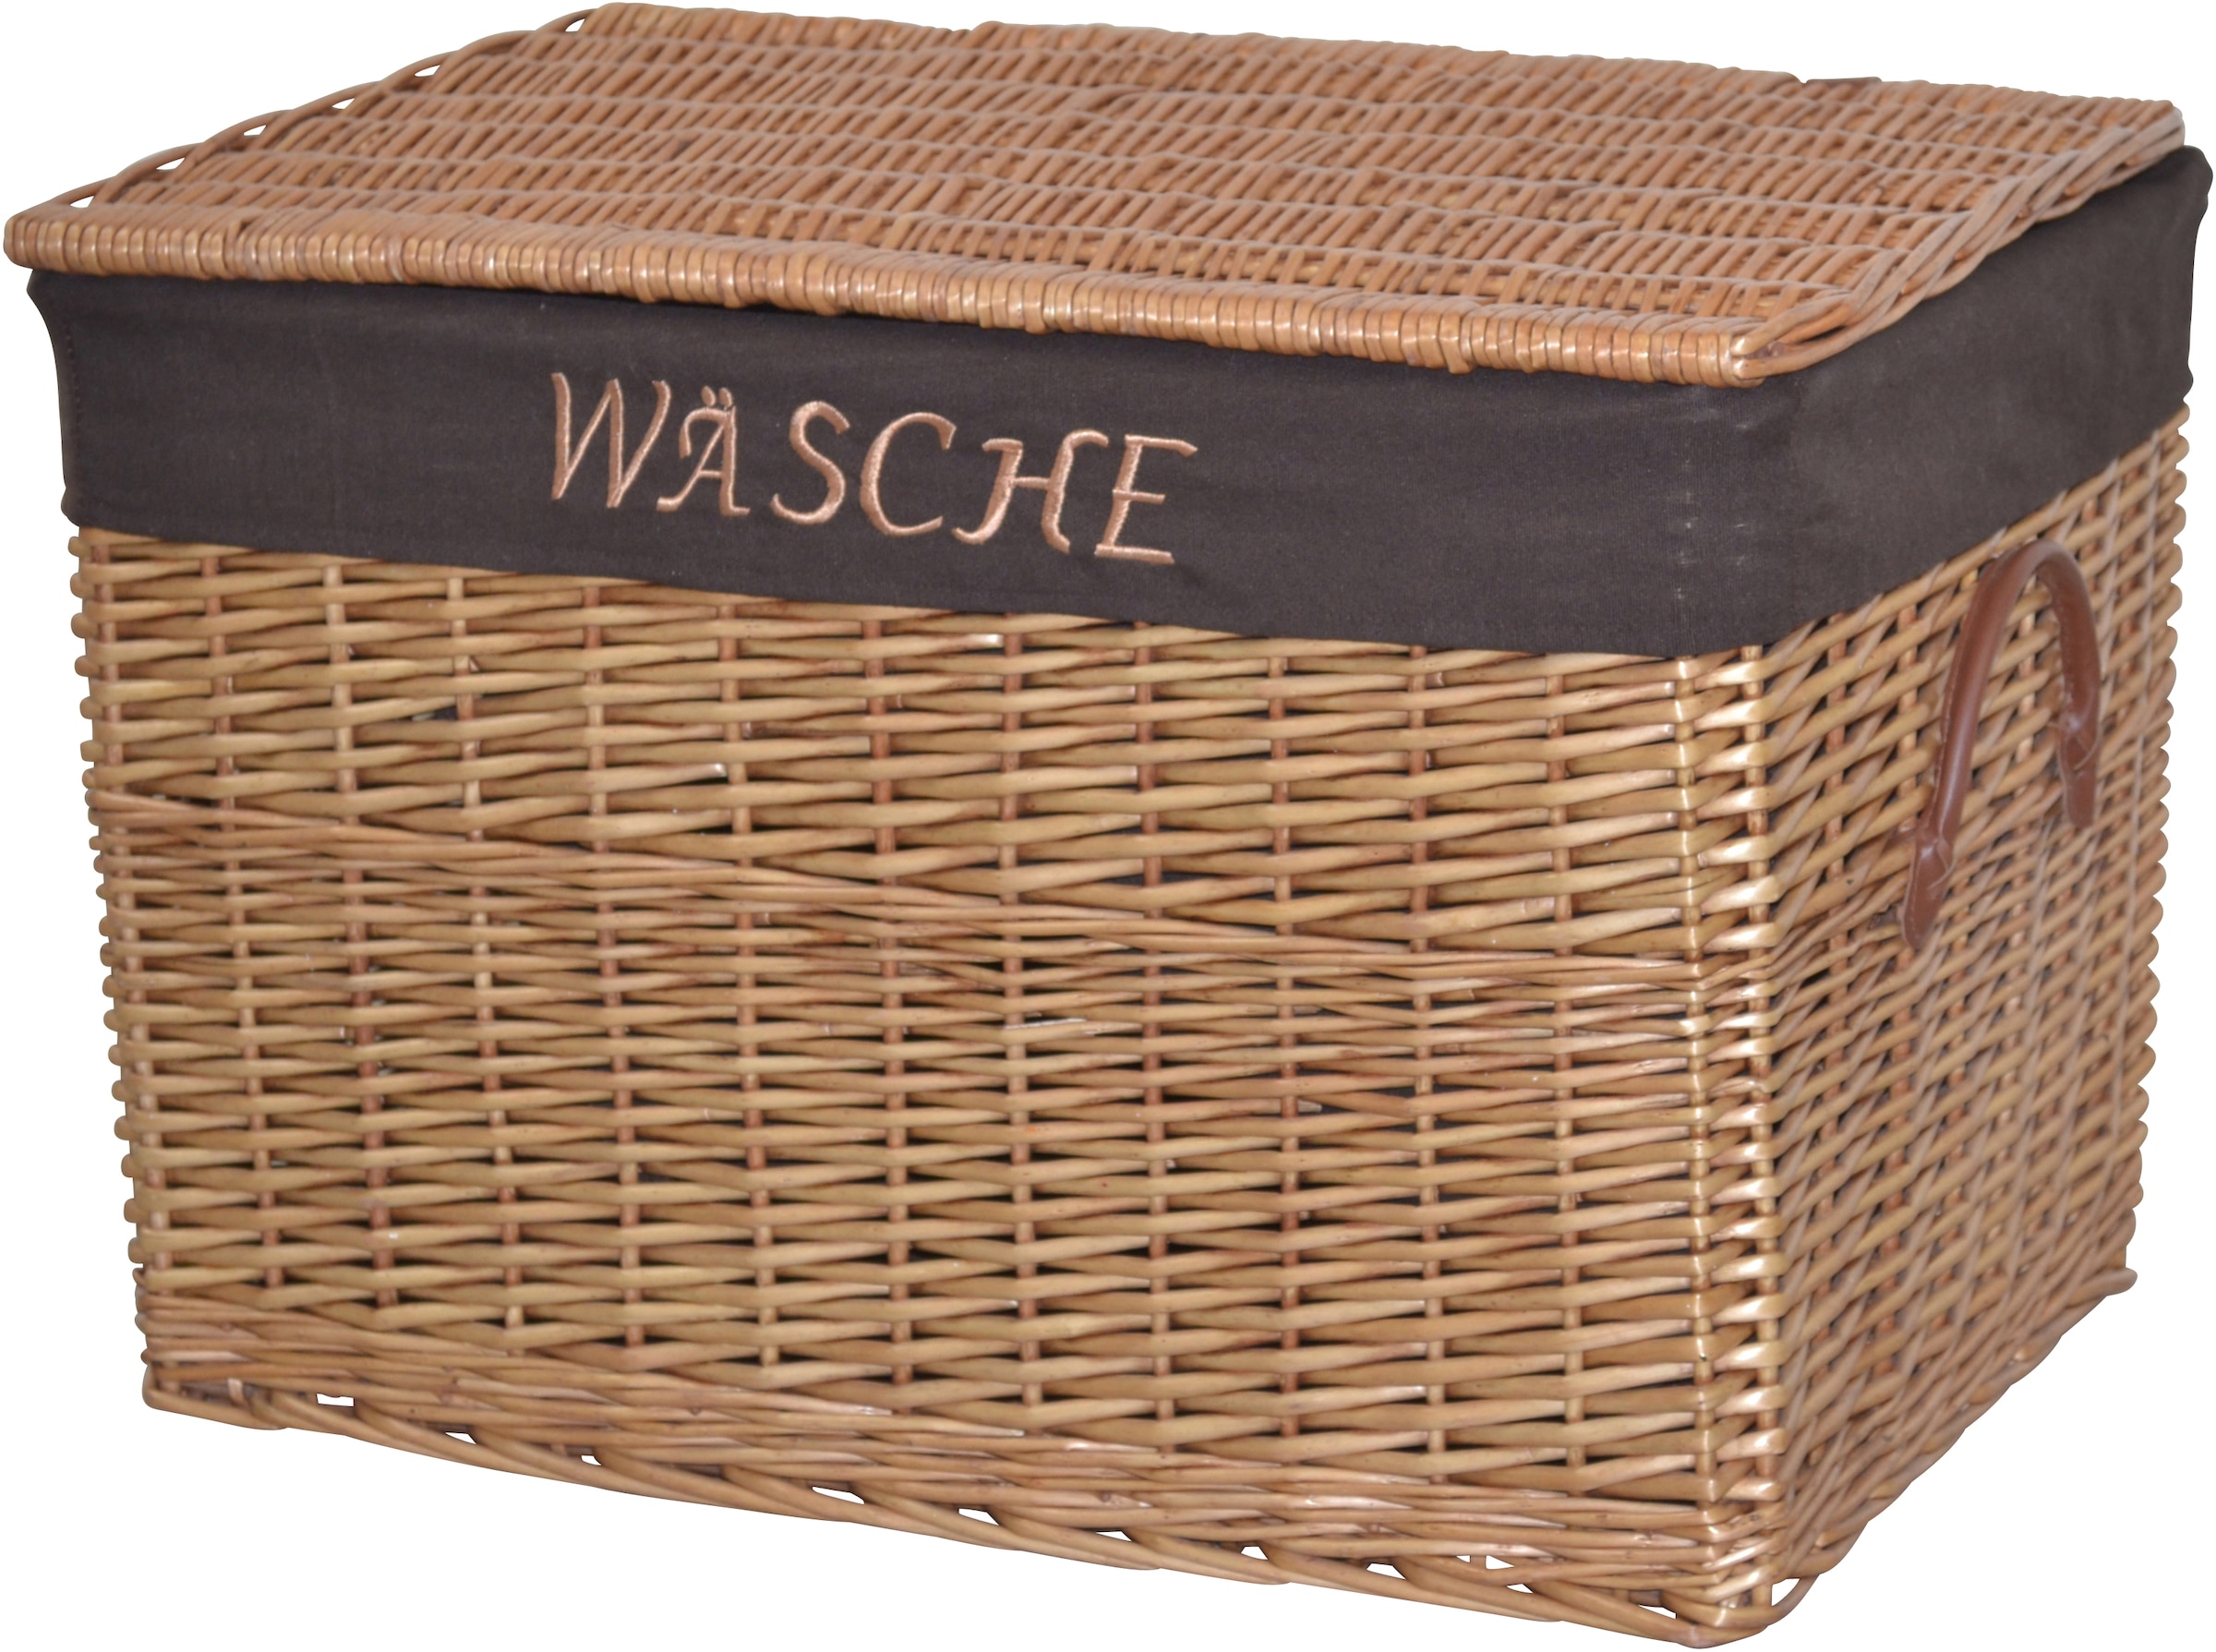 Wäschekorb, aus Weide, handgefertigt, mit herausnehmbarem Stoffeinsatz, 60x42x41cm